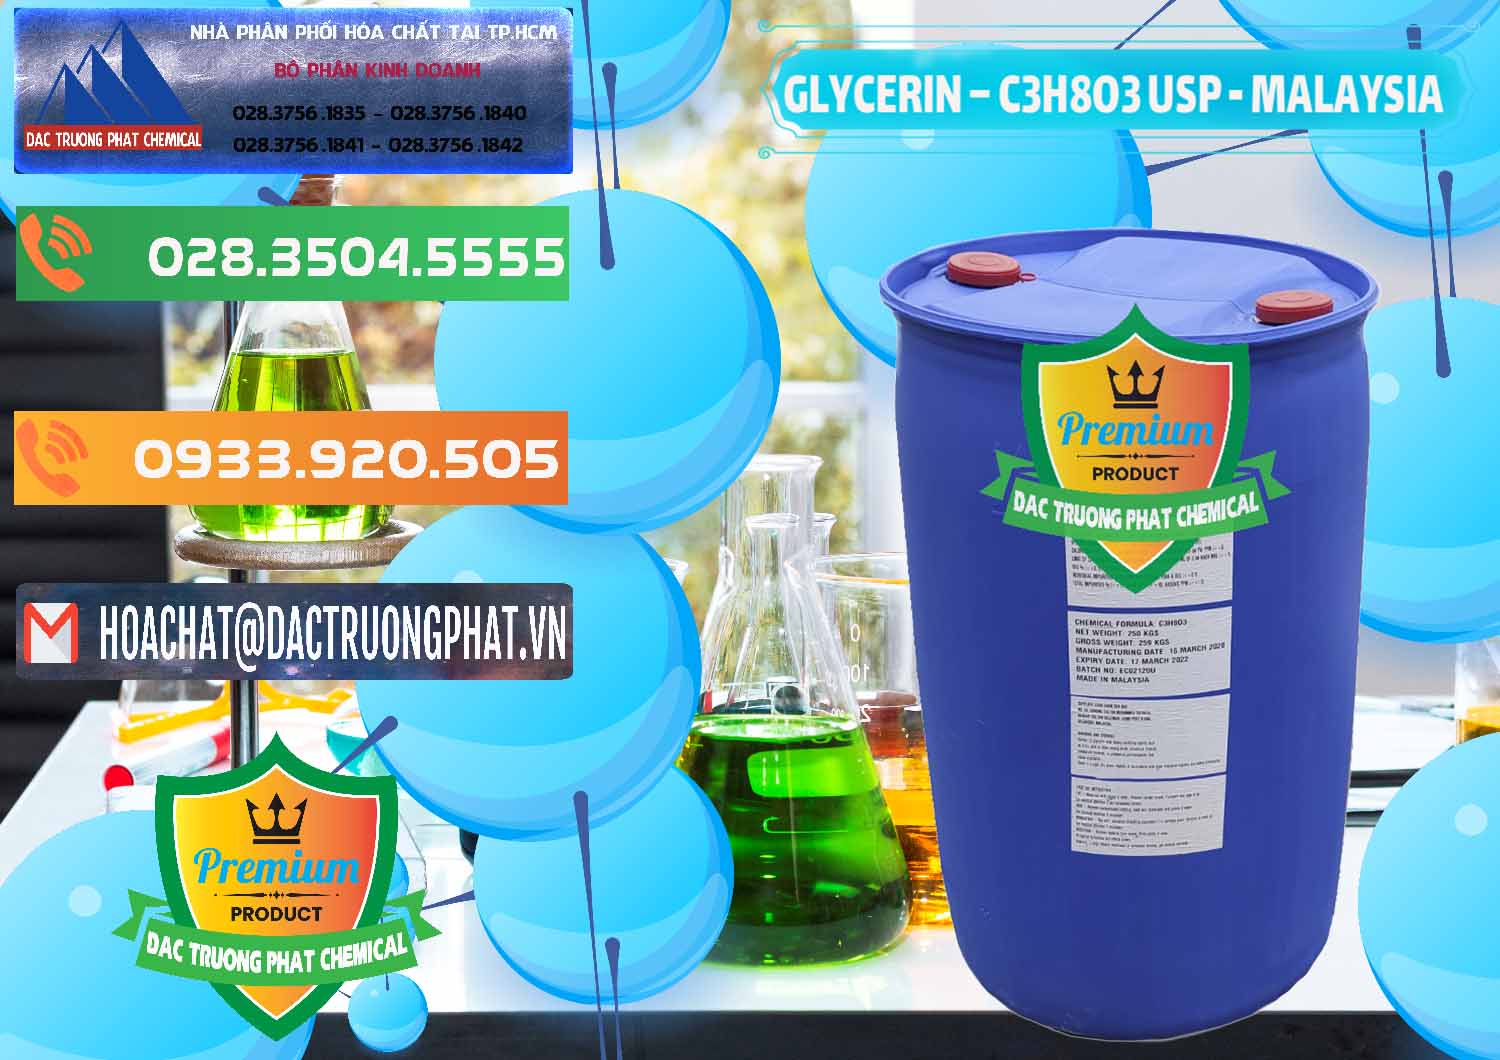 Công ty chuyên cung ứng và bán Glycerin – C3H8O3 USP Malaysia - 0233 - Nhà phân phối và cung cấp hóa chất tại TP.HCM - hoachatxulynuoc.com.vn